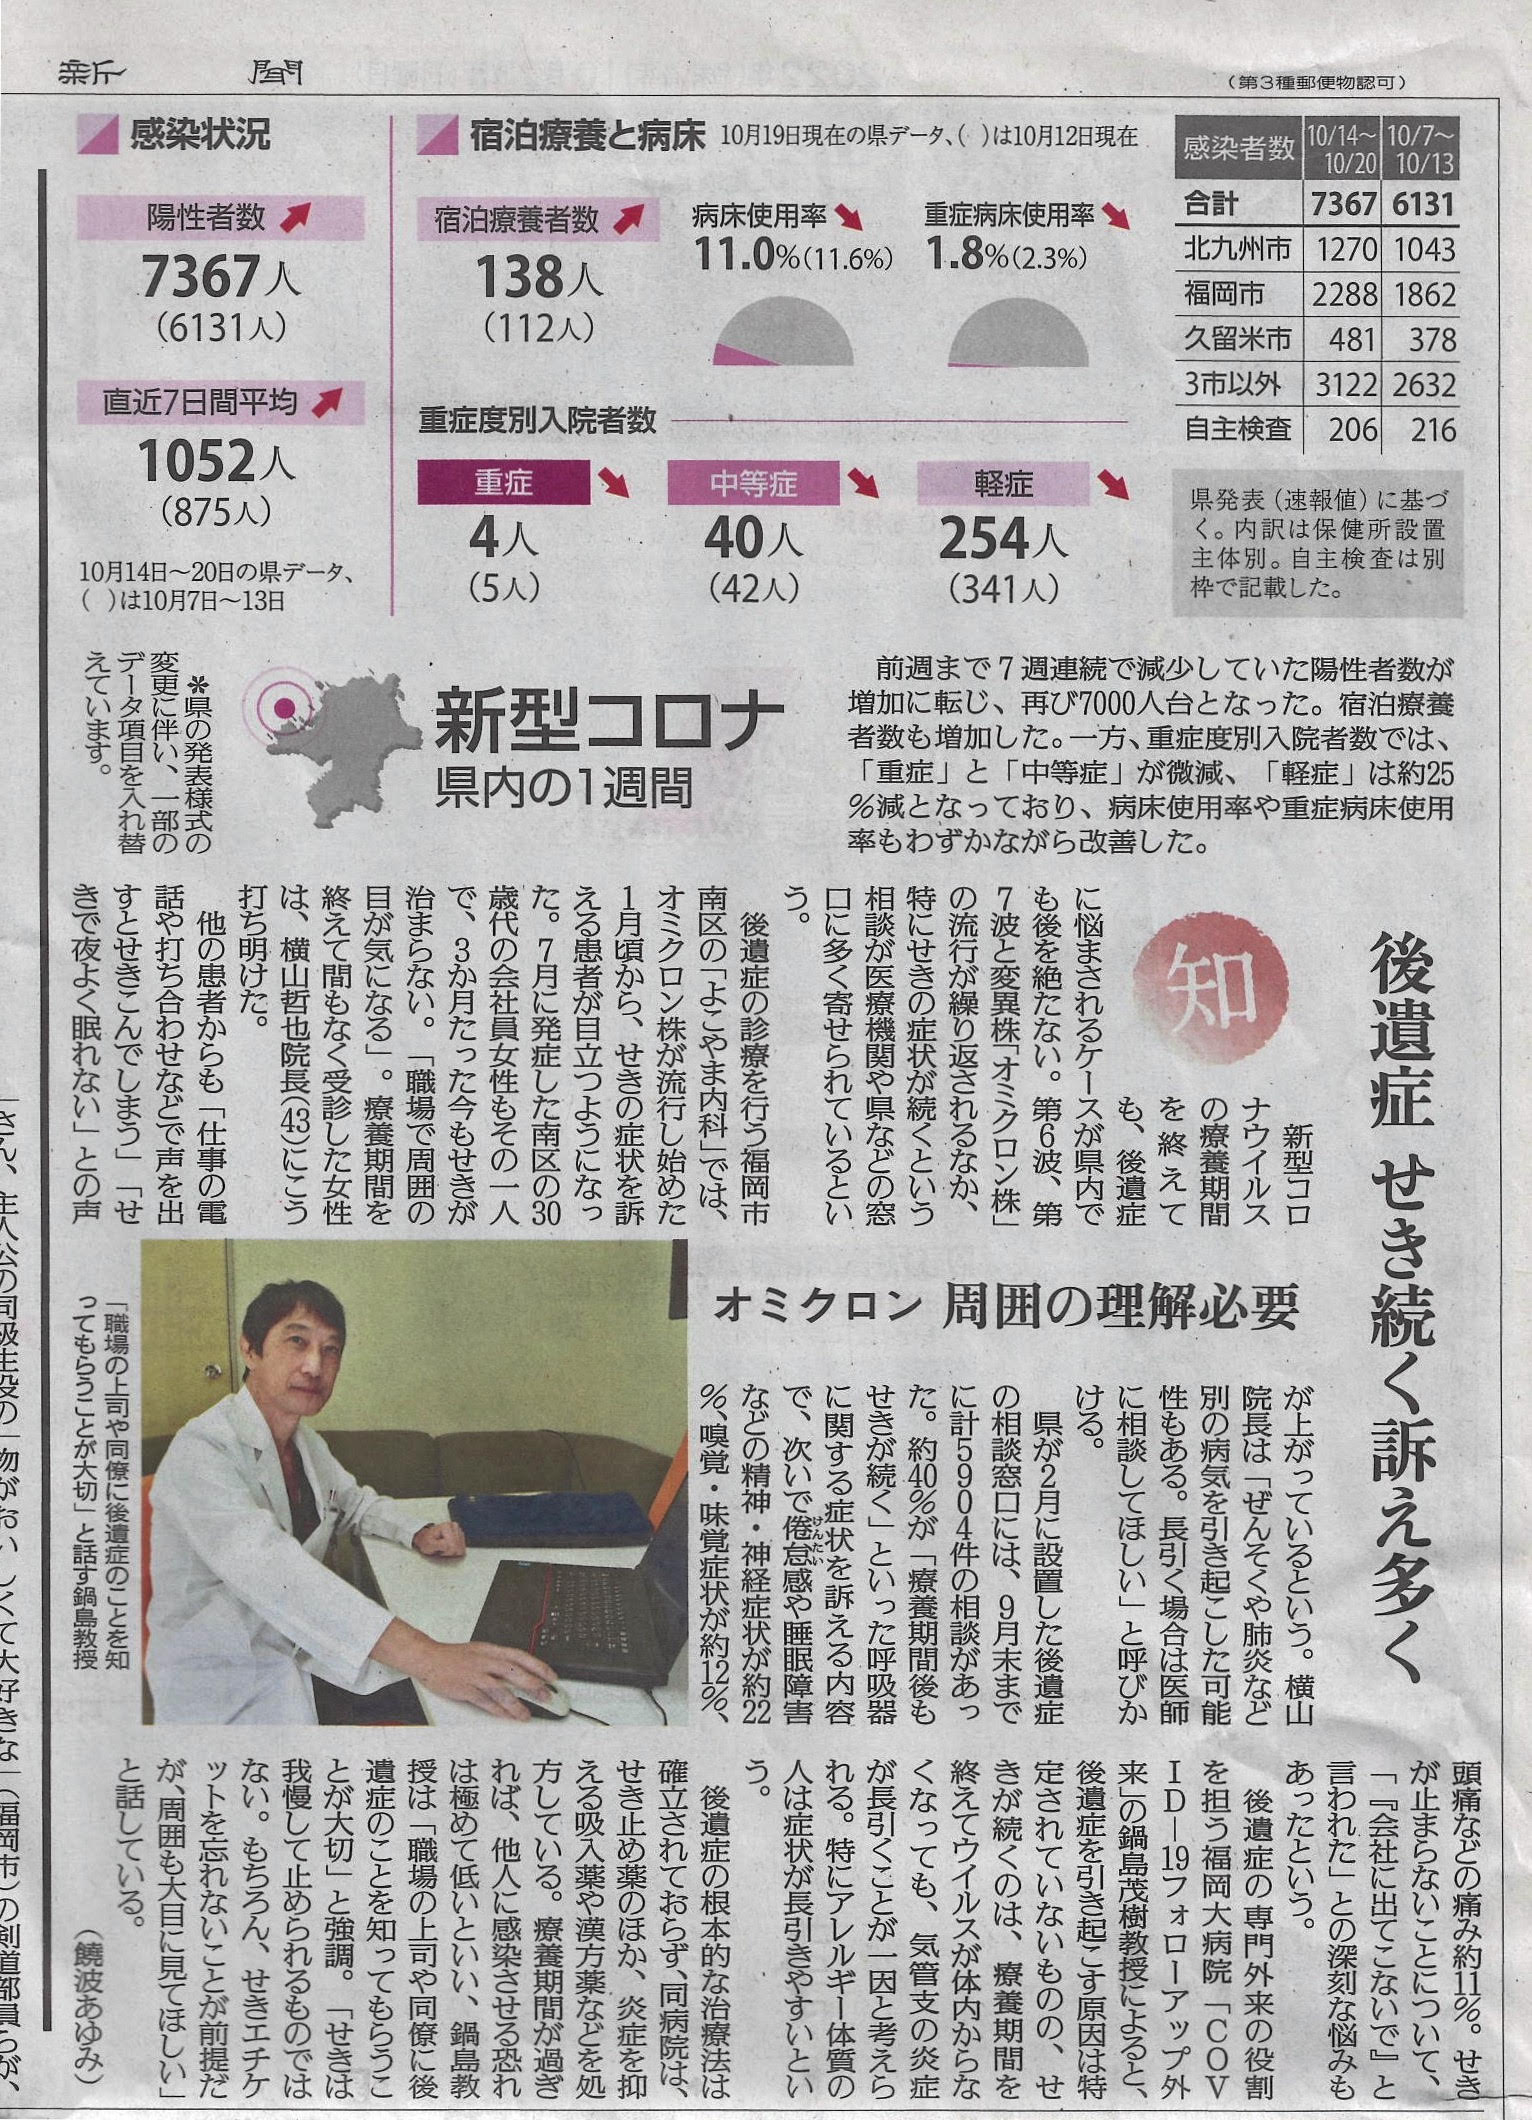 令和4年10月23日の読売新聞に鍋島教授のコメント記事が掲載されました。